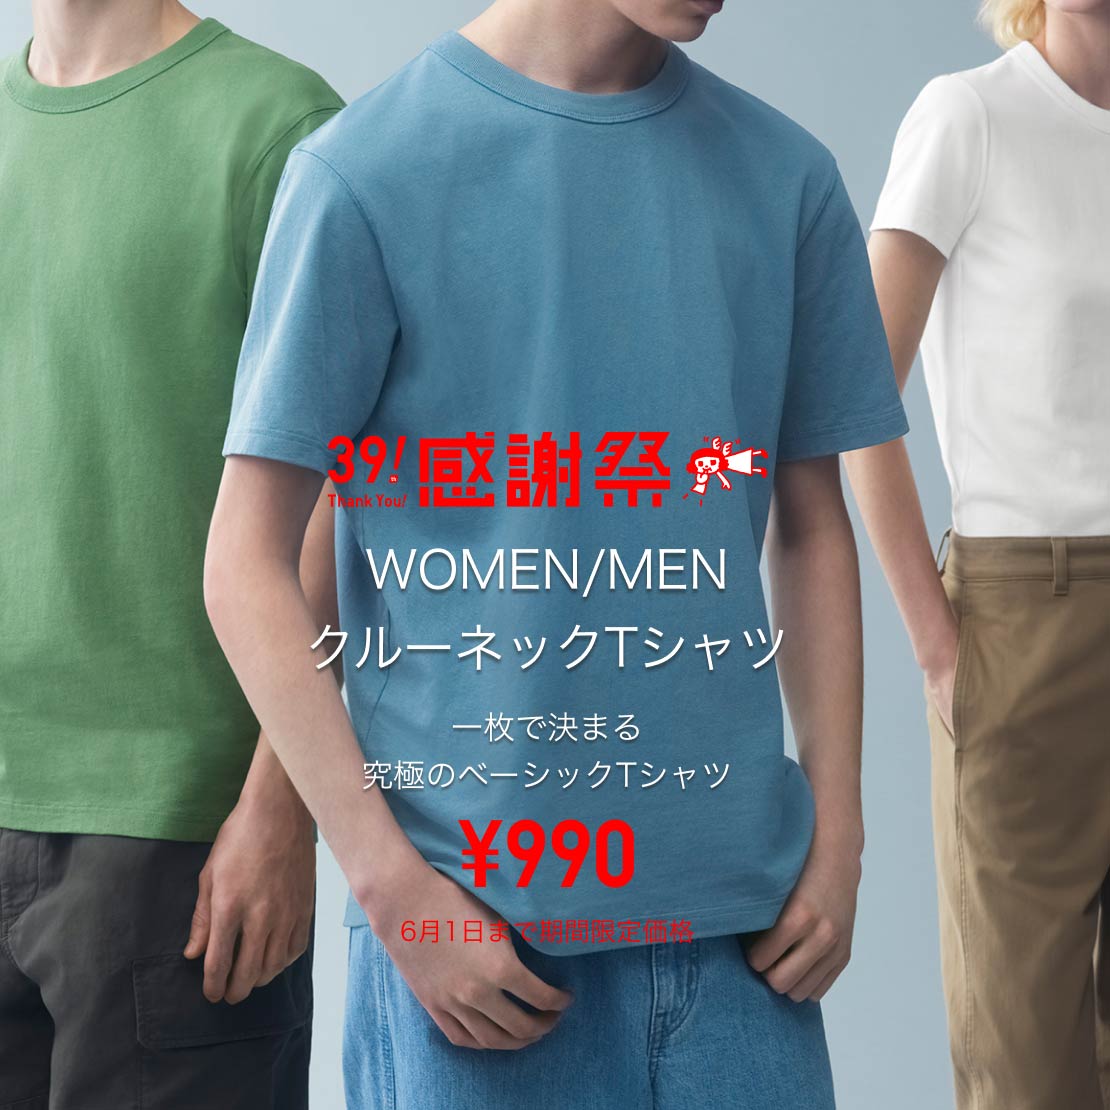 WOMEN/MEN クルーネックTシャツ ¥990 6月1日まで期間限定価格